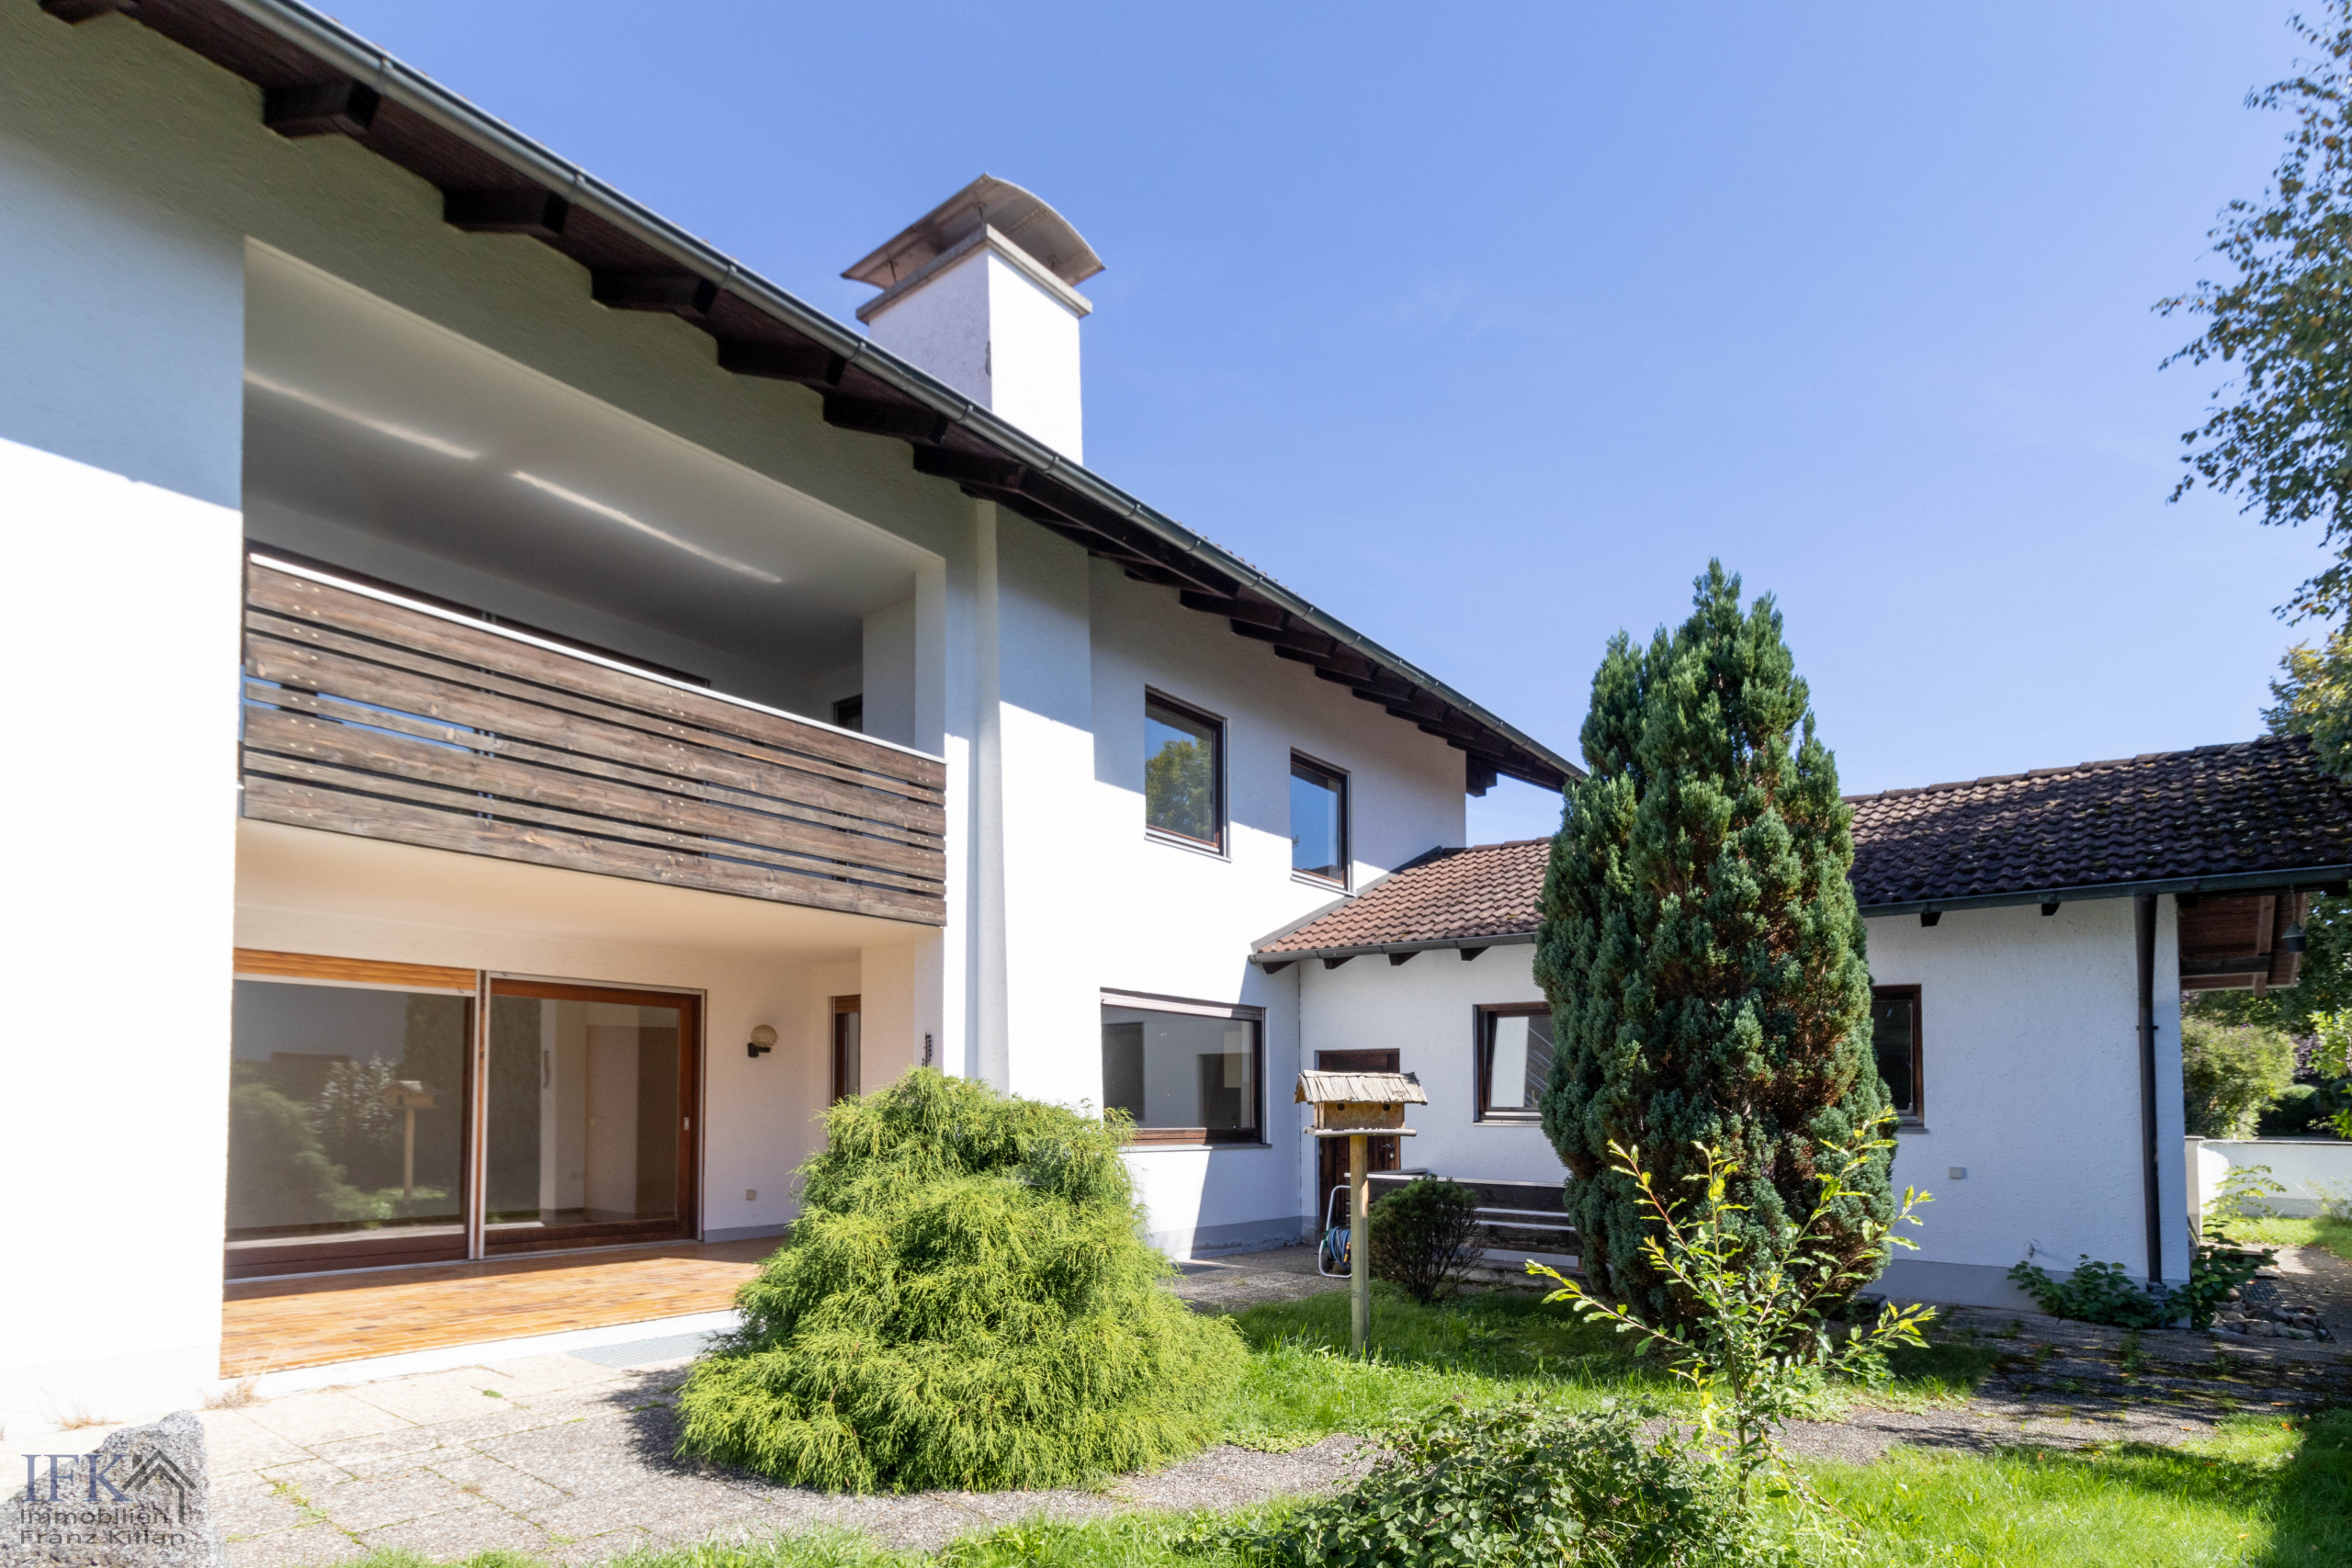 Großes, befristet vermietetes 3-Familienhaus in Bestlage von Weilheim - Seitenansicht